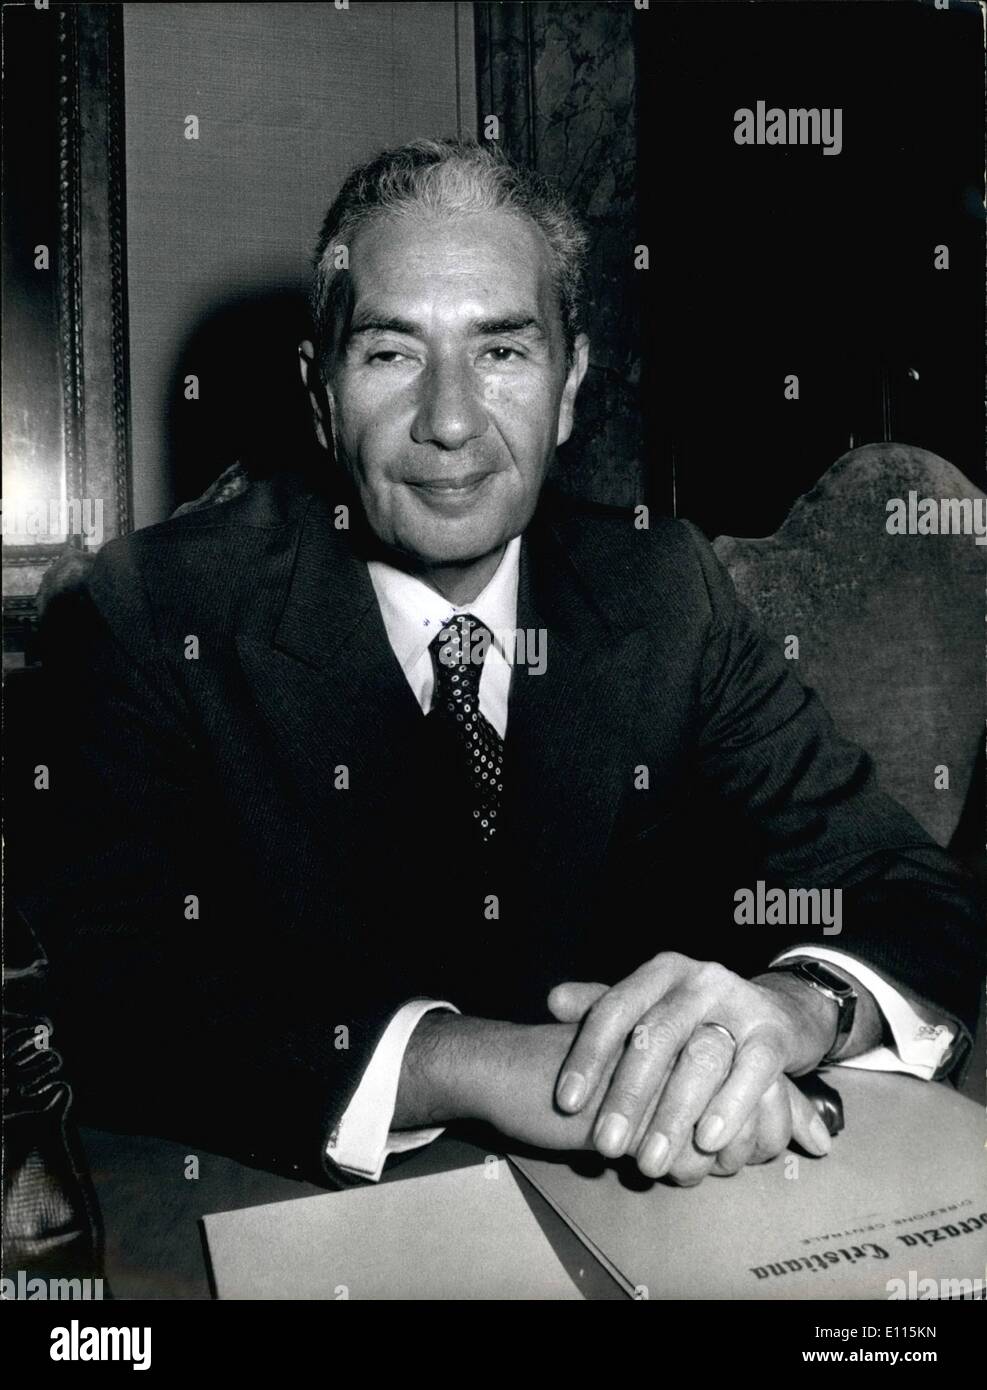 Enero 01, 1976 - Roma, Enero 1976 = La Italia de la posguerra 32 crisis de gobierno..: la renuncia de Primer Ministro. Aldo Moro que recibirán más probable el nuevo encargado de formar el nuevo gobierno Foto de stock